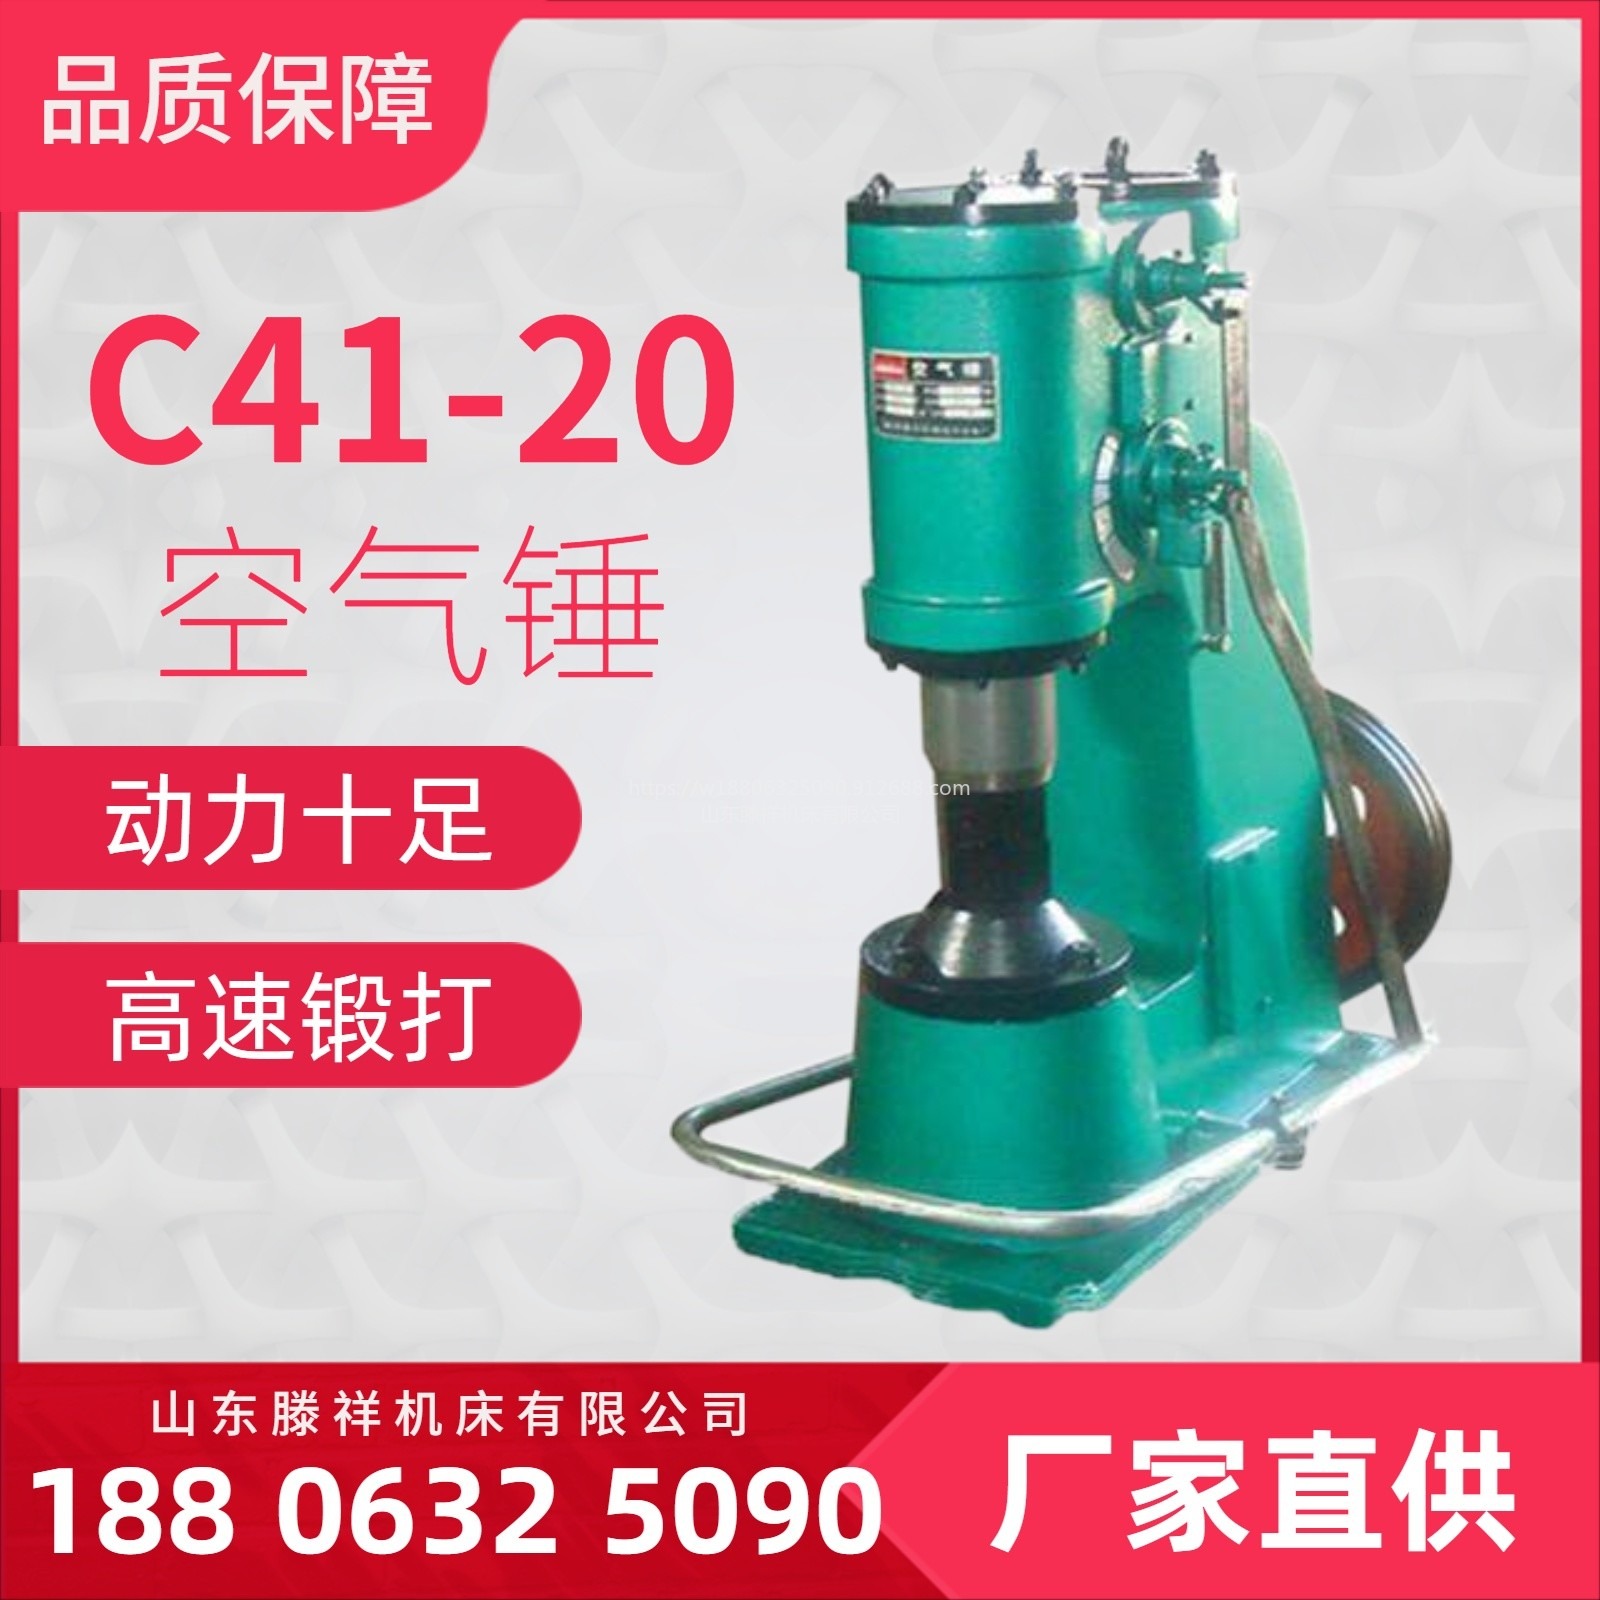 C41-20KG空气锤   高速锻打 小型空气锤滕祥机床现货供应C41-20KG